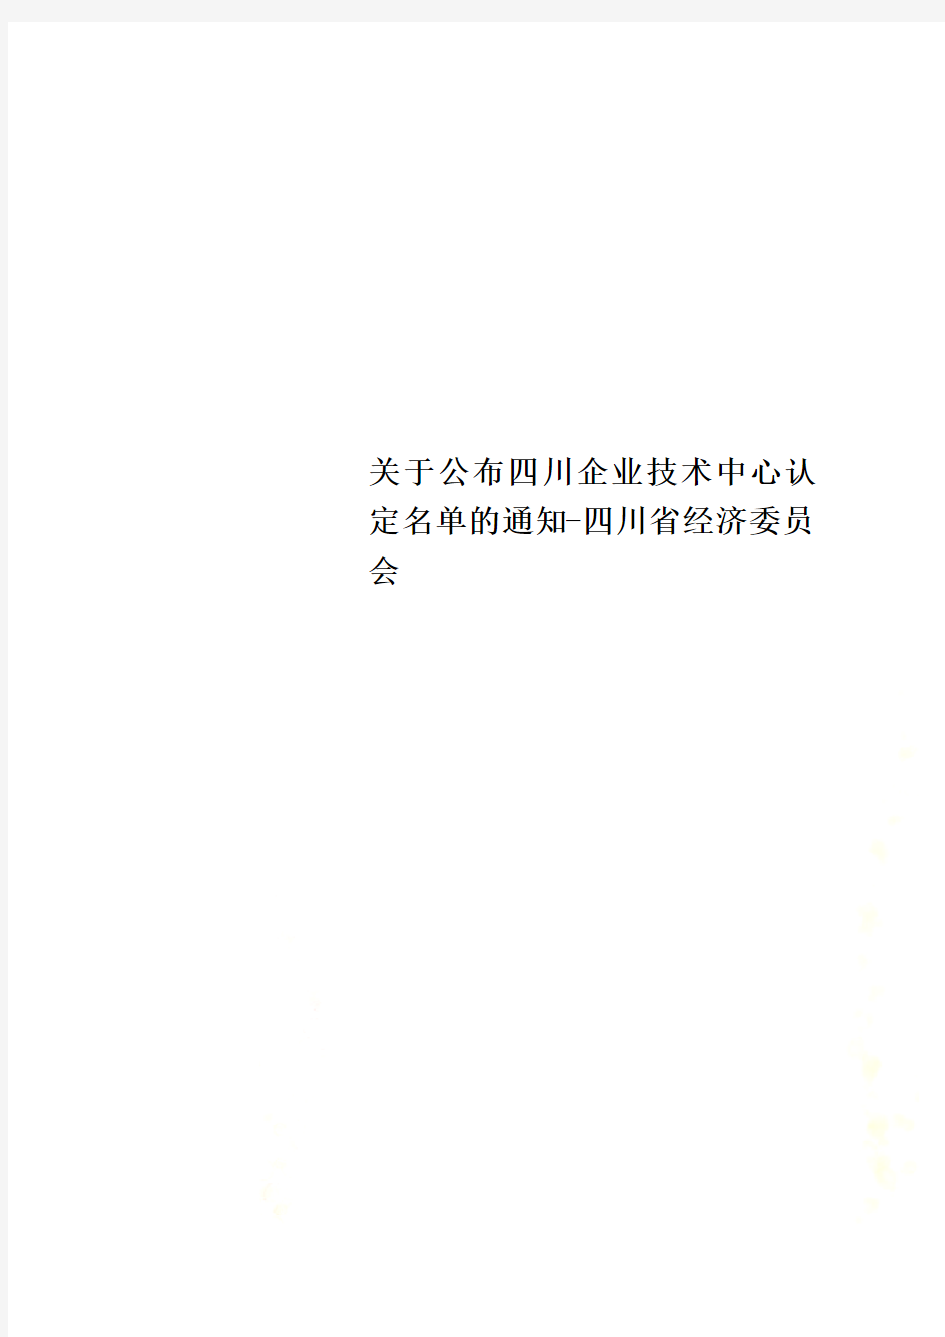 关于公布四川企业技术中心认定名单的通知-四川省经济委员会